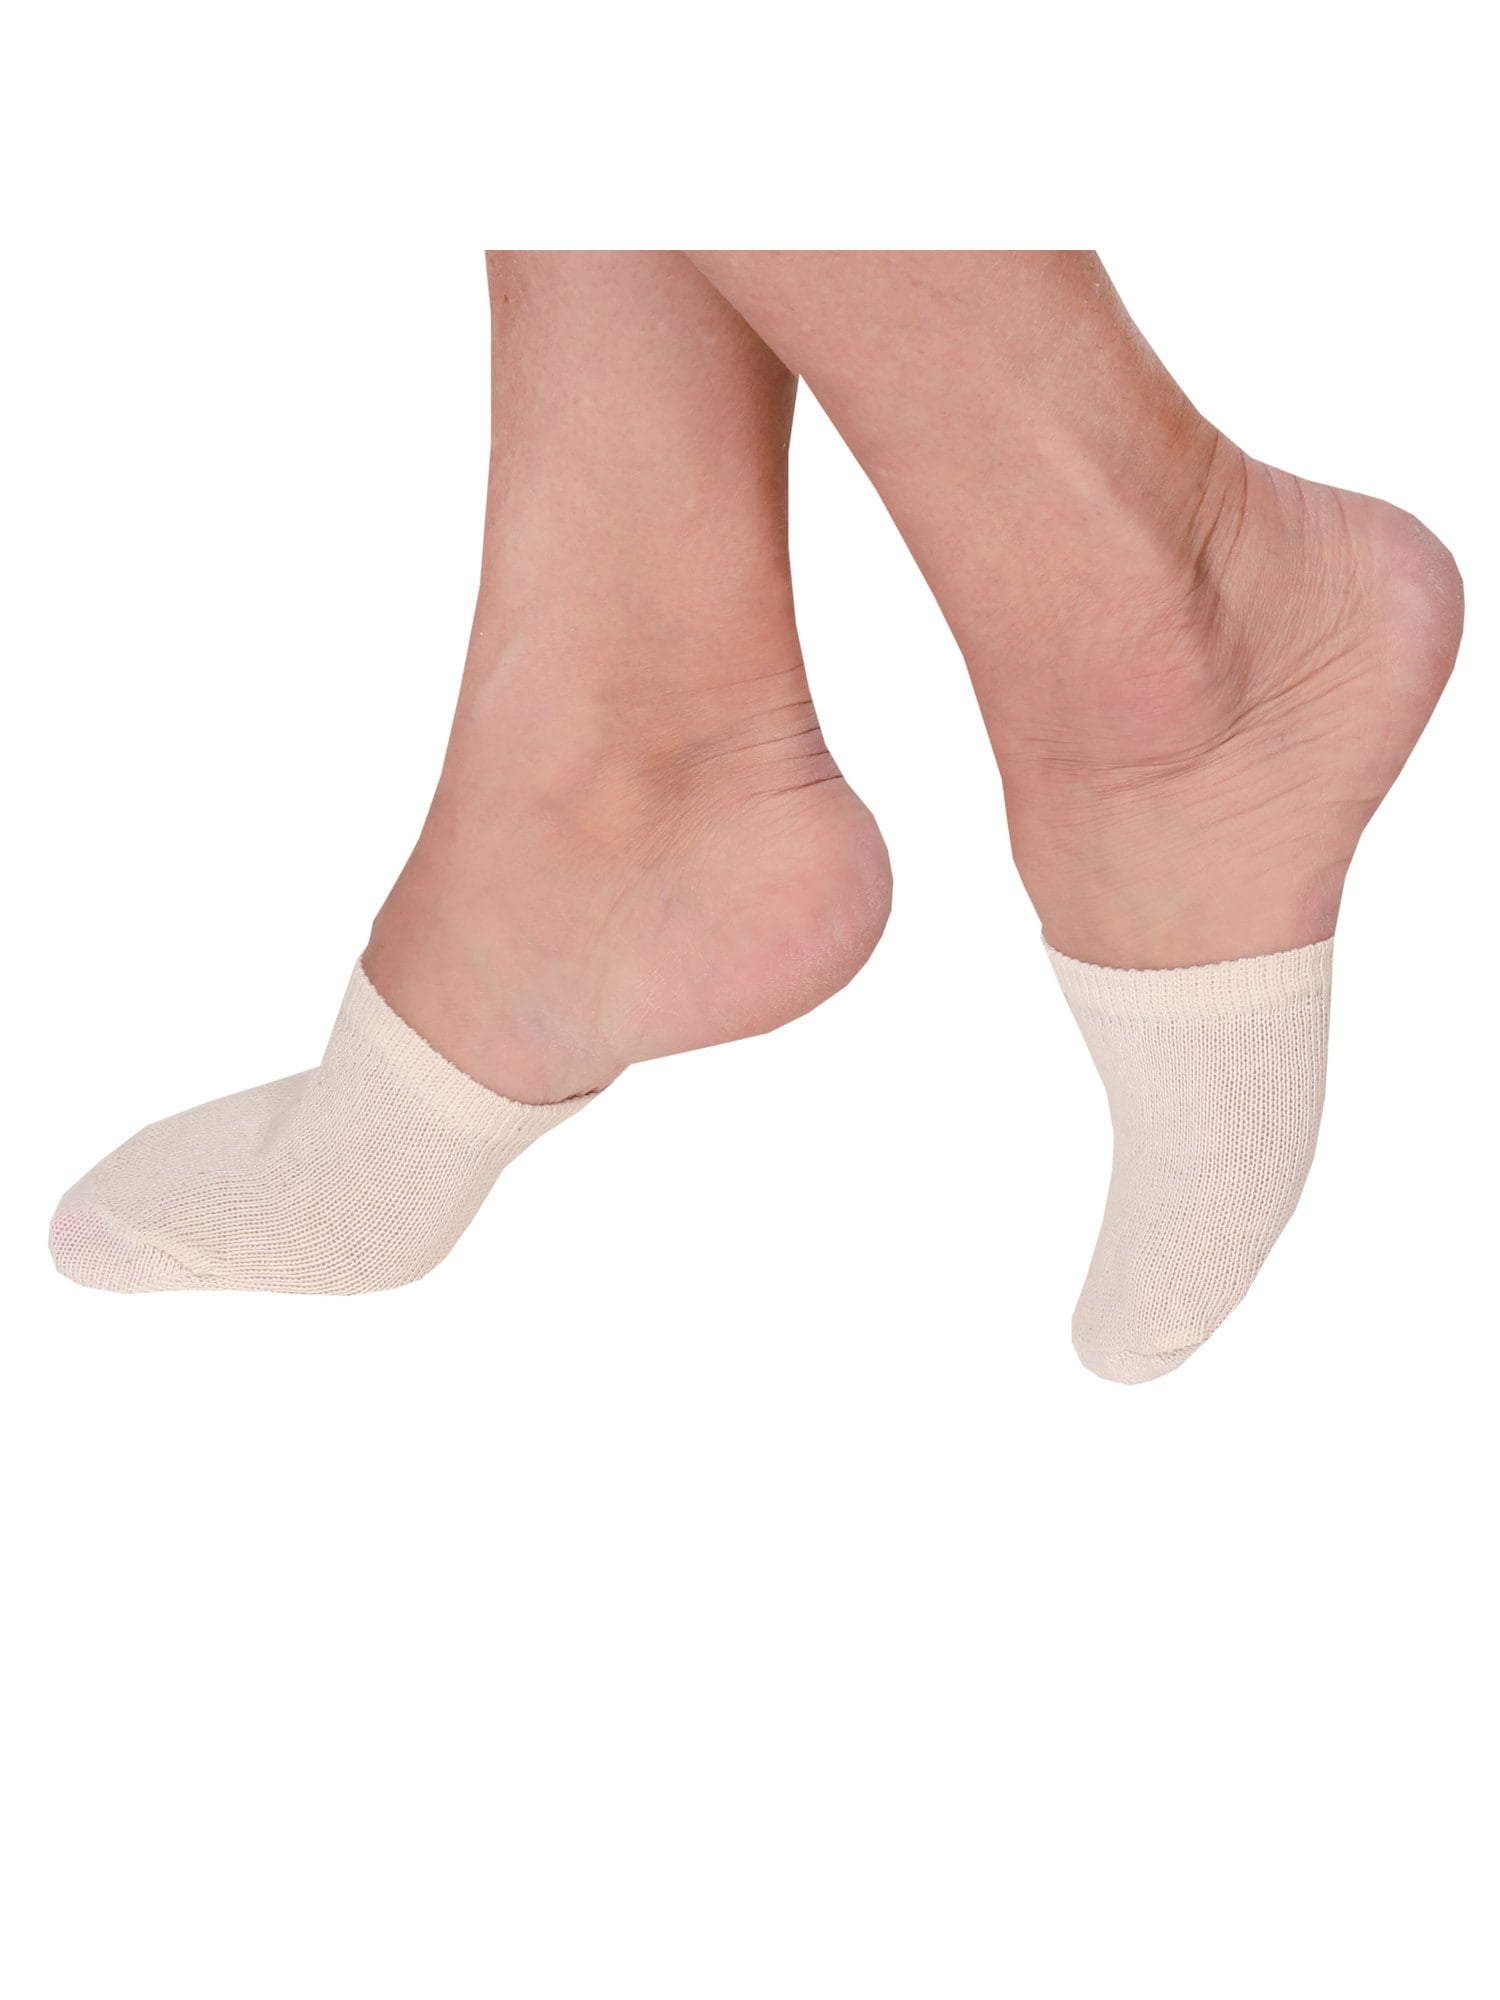 TRIUMPH HOSIERY Women's Toe Cover Socks Toe Topper Liner Half